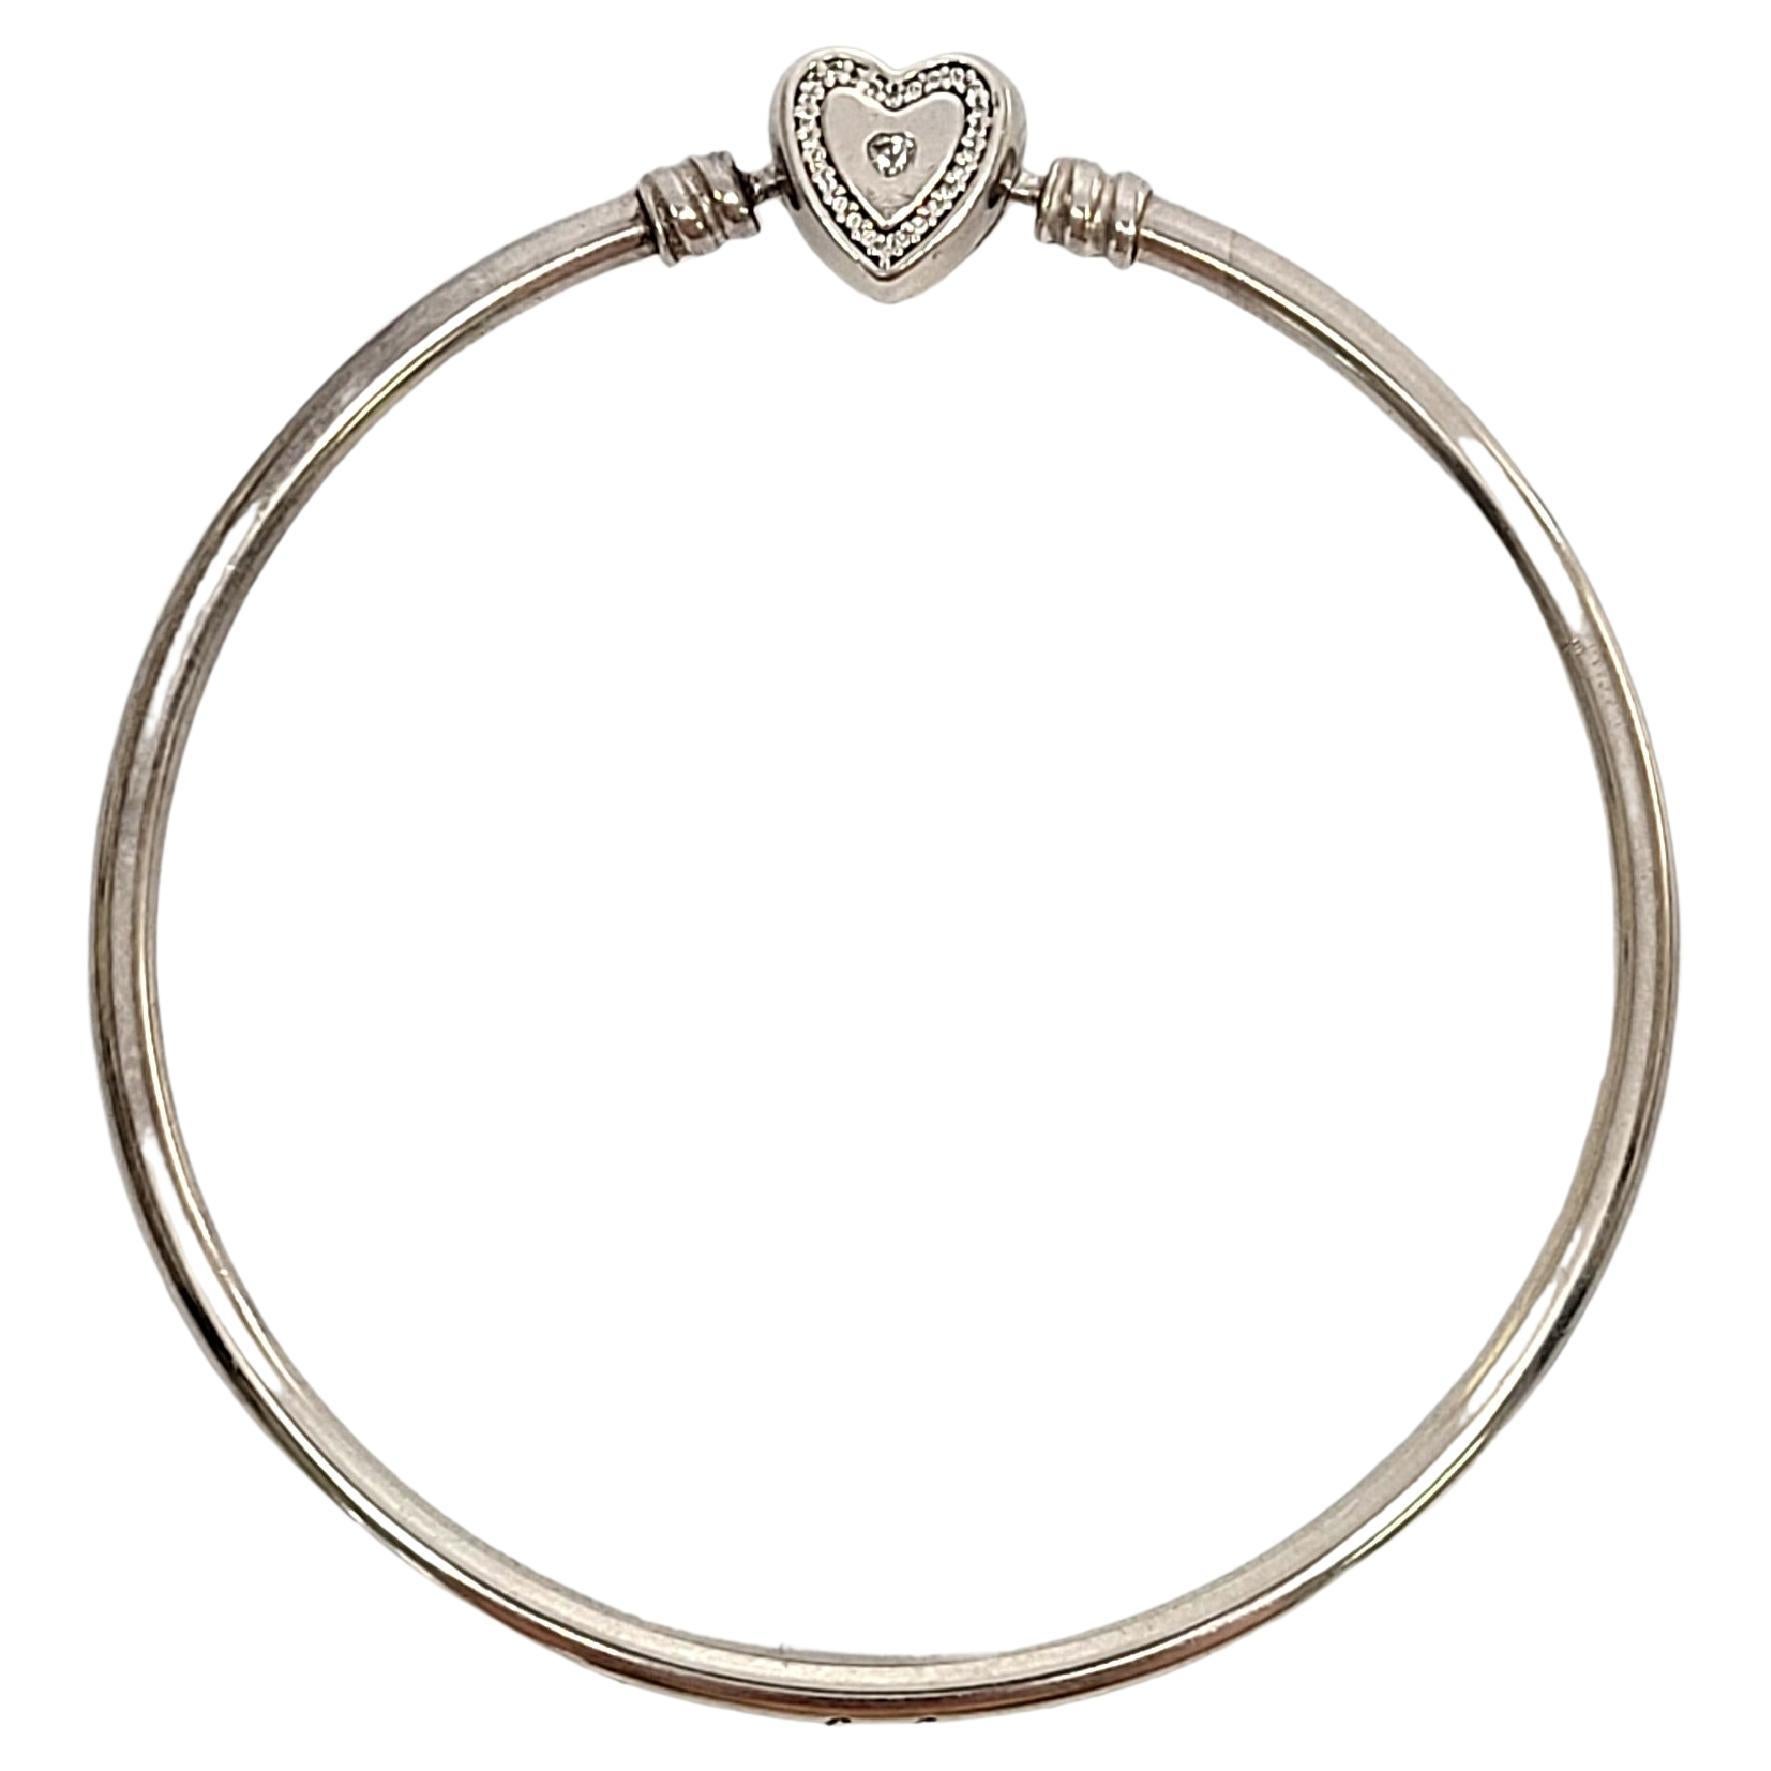  Pandora Women's Bracelet Sterling Silver ref: 590719